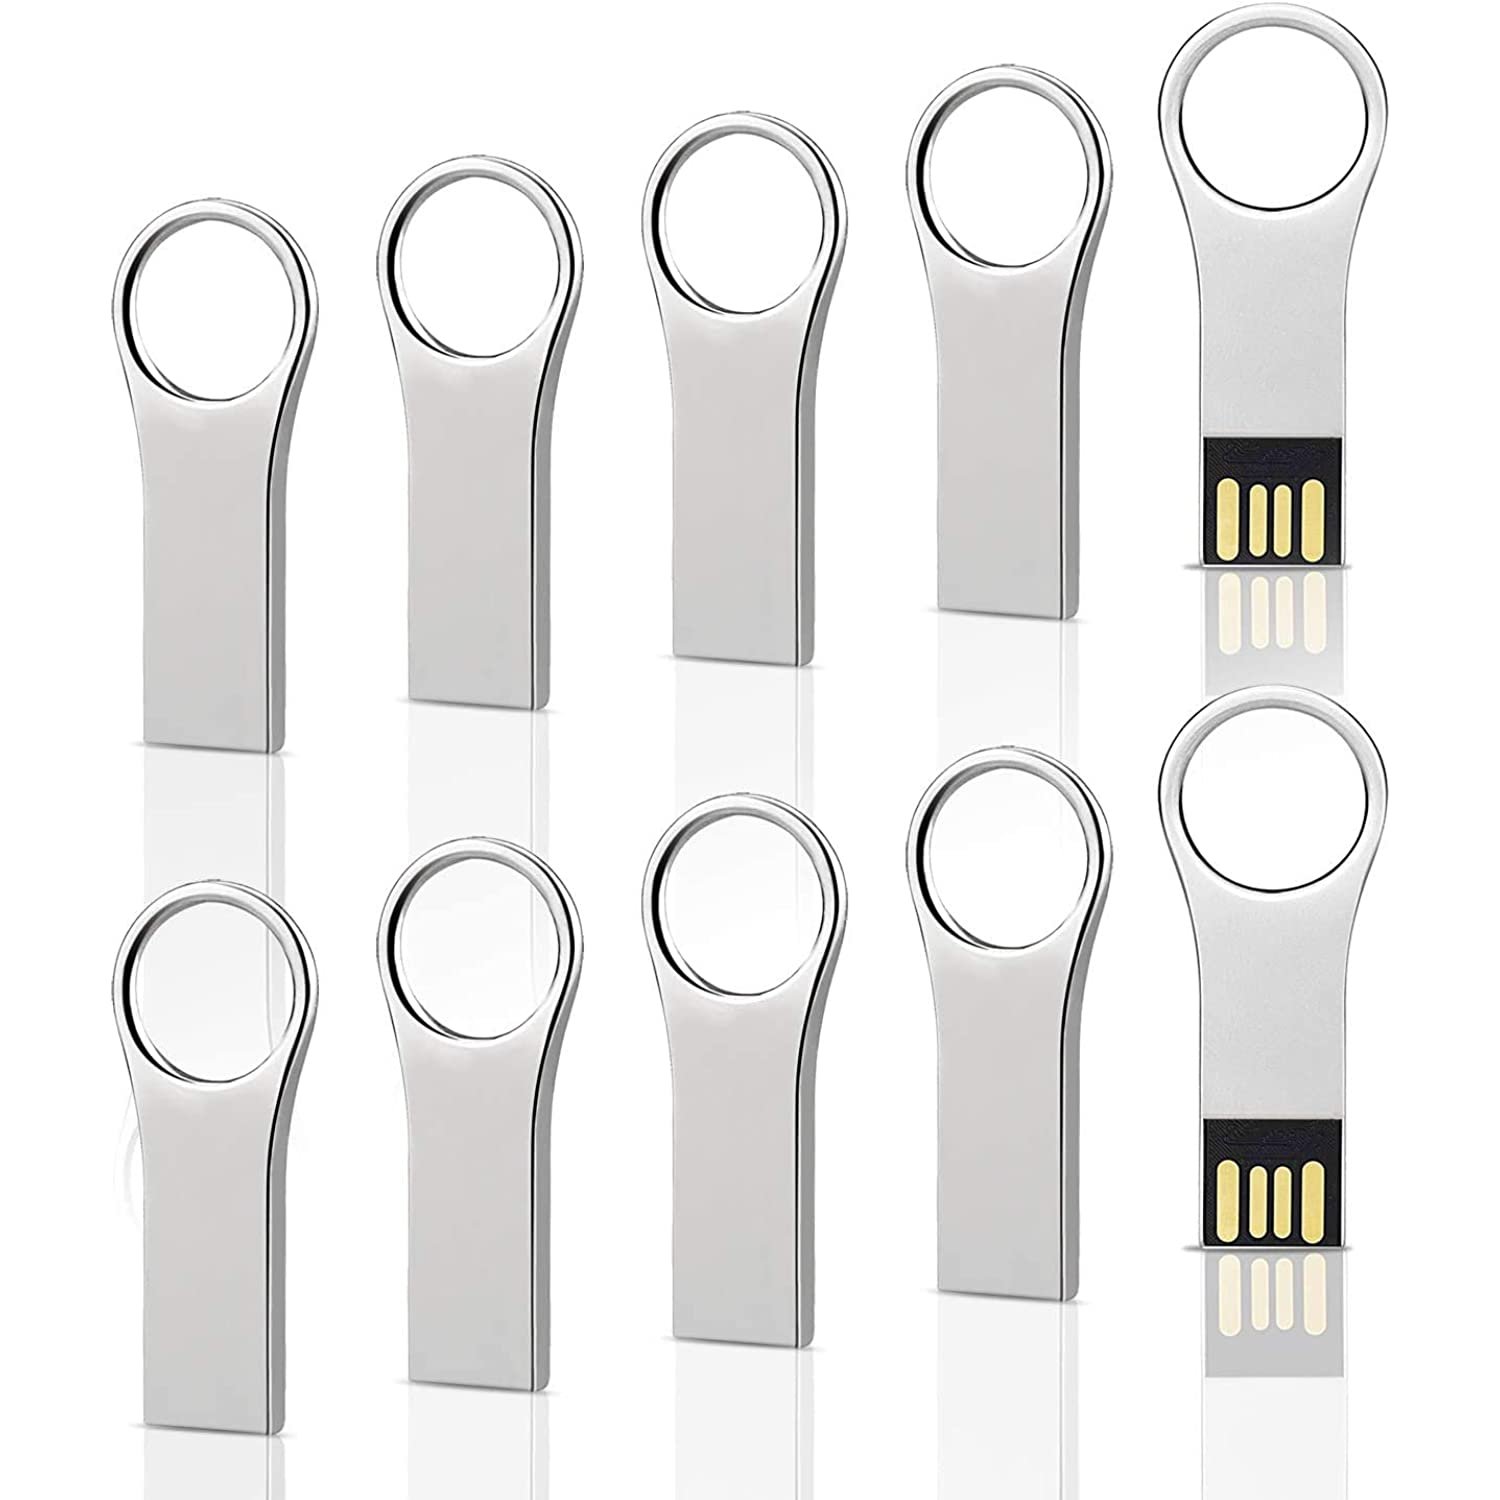 10 Pack 2Gb Metal Key Shape Usb Flash Drive, Usb 2.0 Memory Stick Thumb Drives Jump Drive-Silver